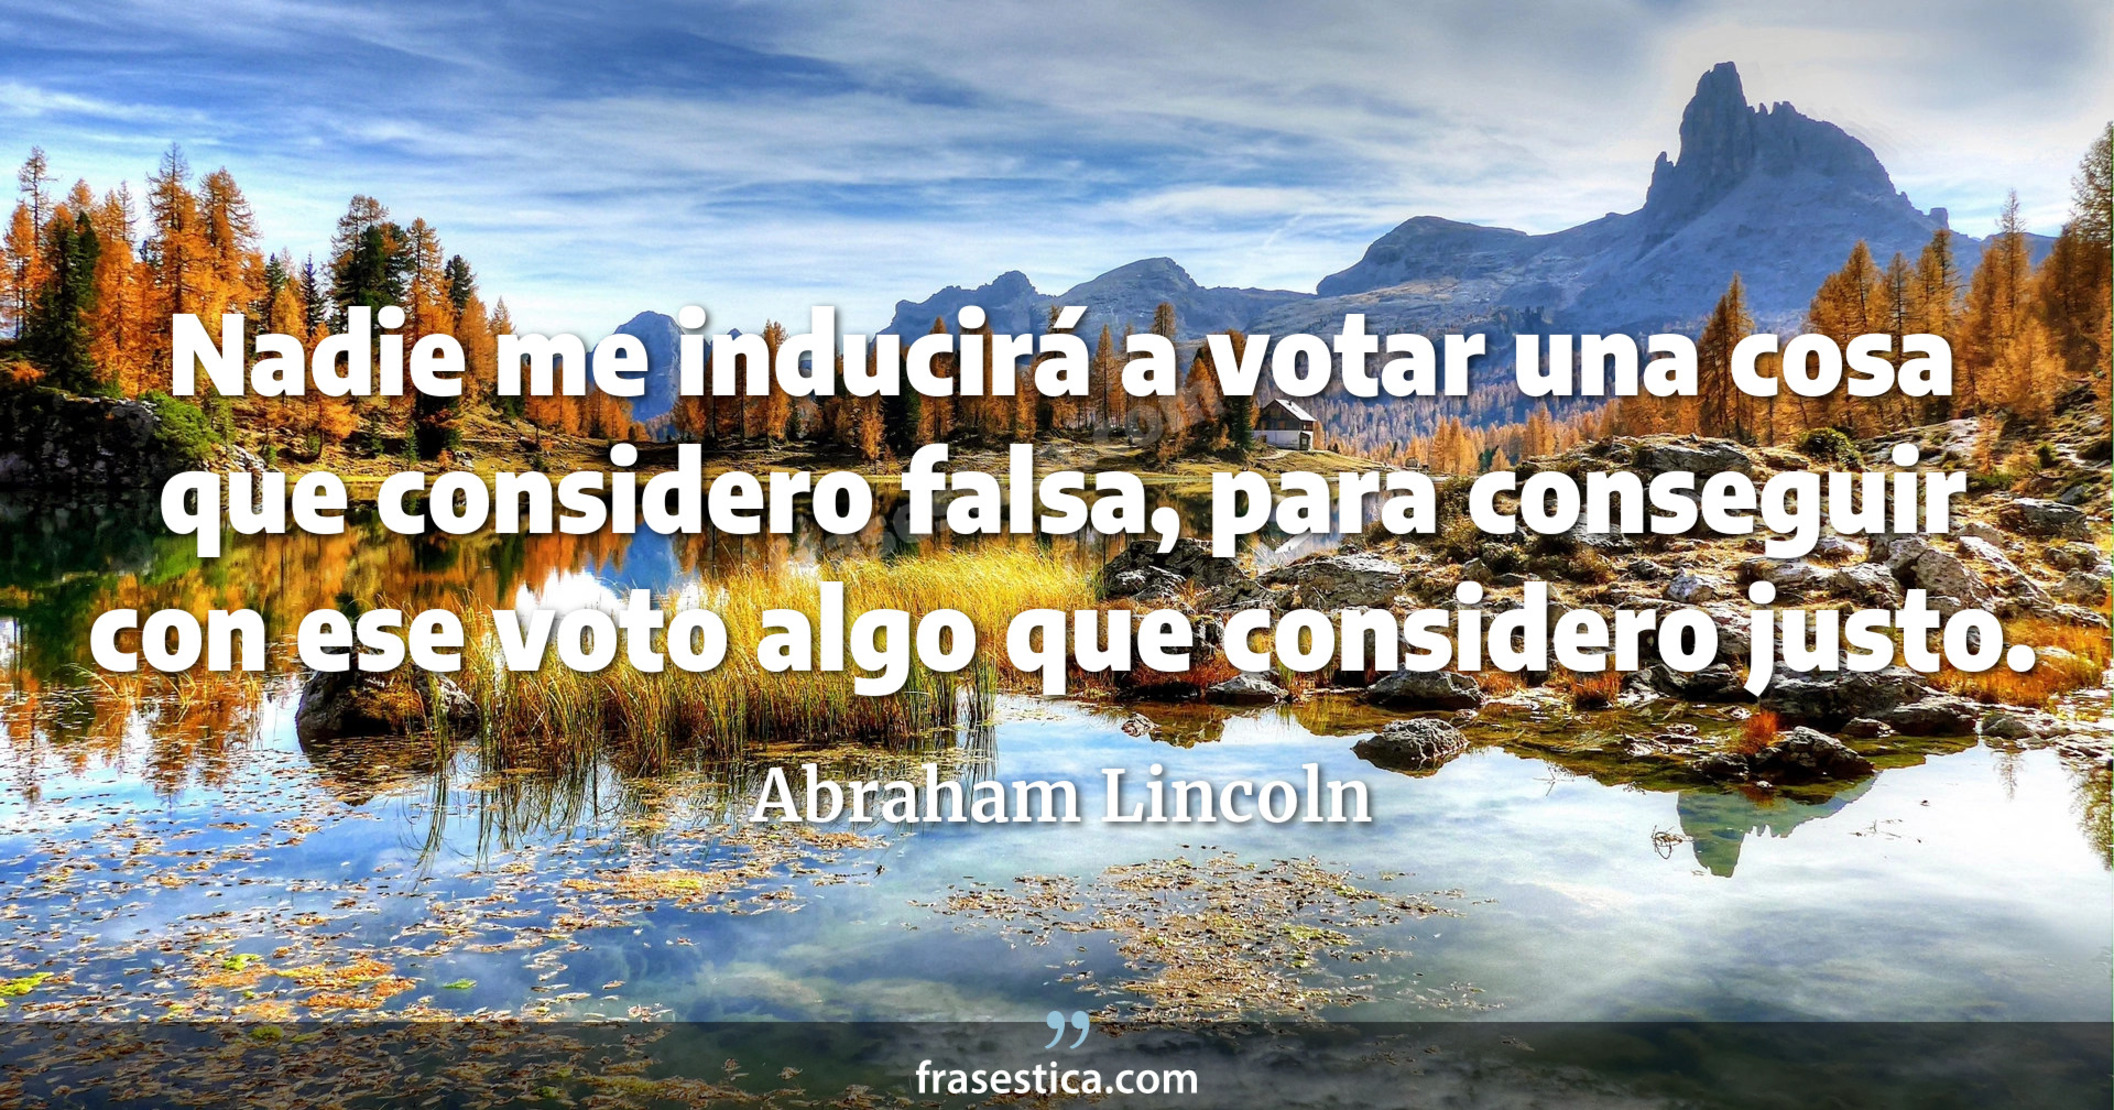 Nadie me inducirá a votar una cosa que considero falsa, para conseguir con ese voto algo que considero justo. - Abraham Lincoln